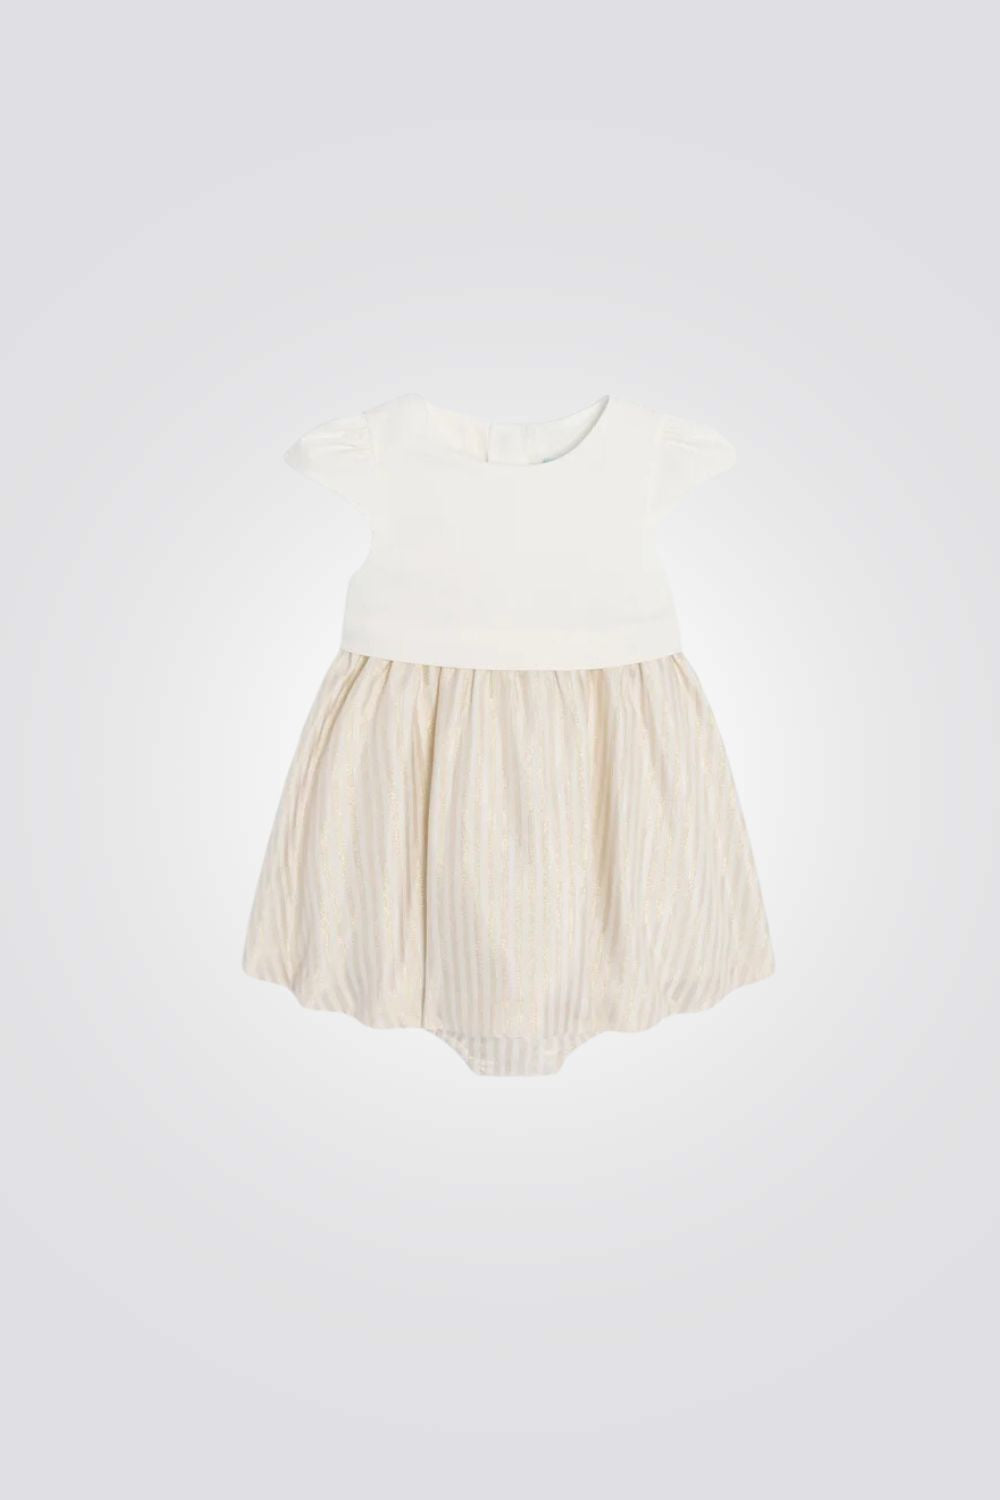 שמלה לתינוקות בצבע לבן וזהב